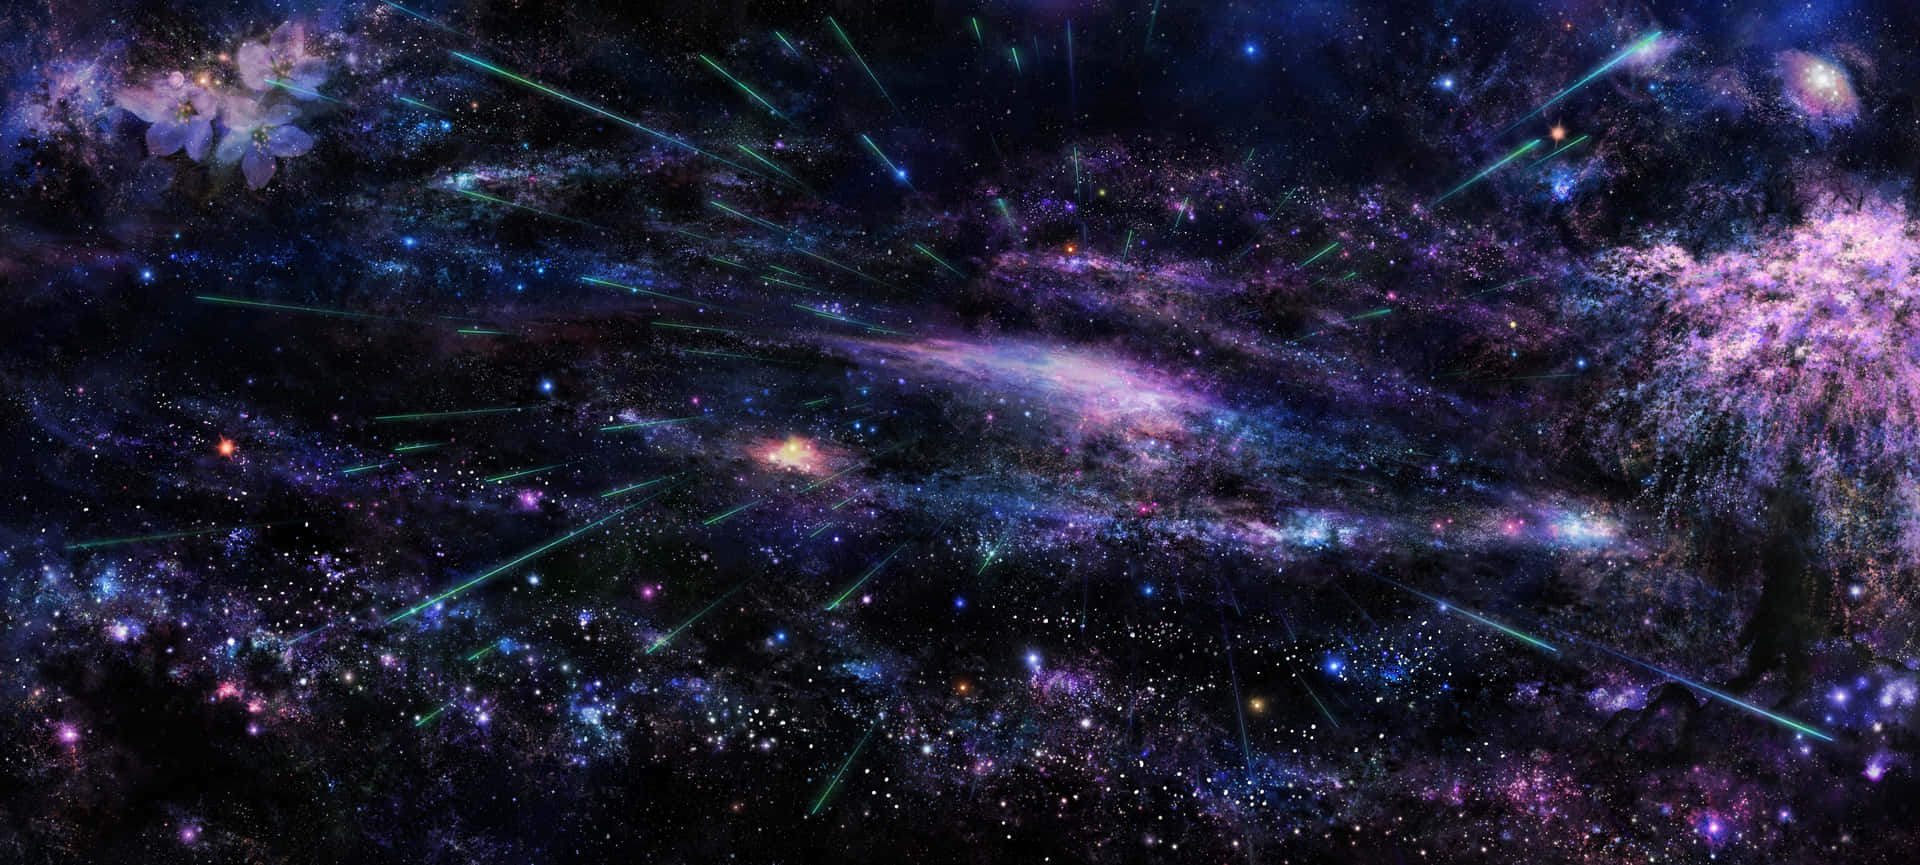 ¡capturala Belleza Del Cielo Nocturno Con Esta Impresionante Imagen De Una Hermosa Galaxia!